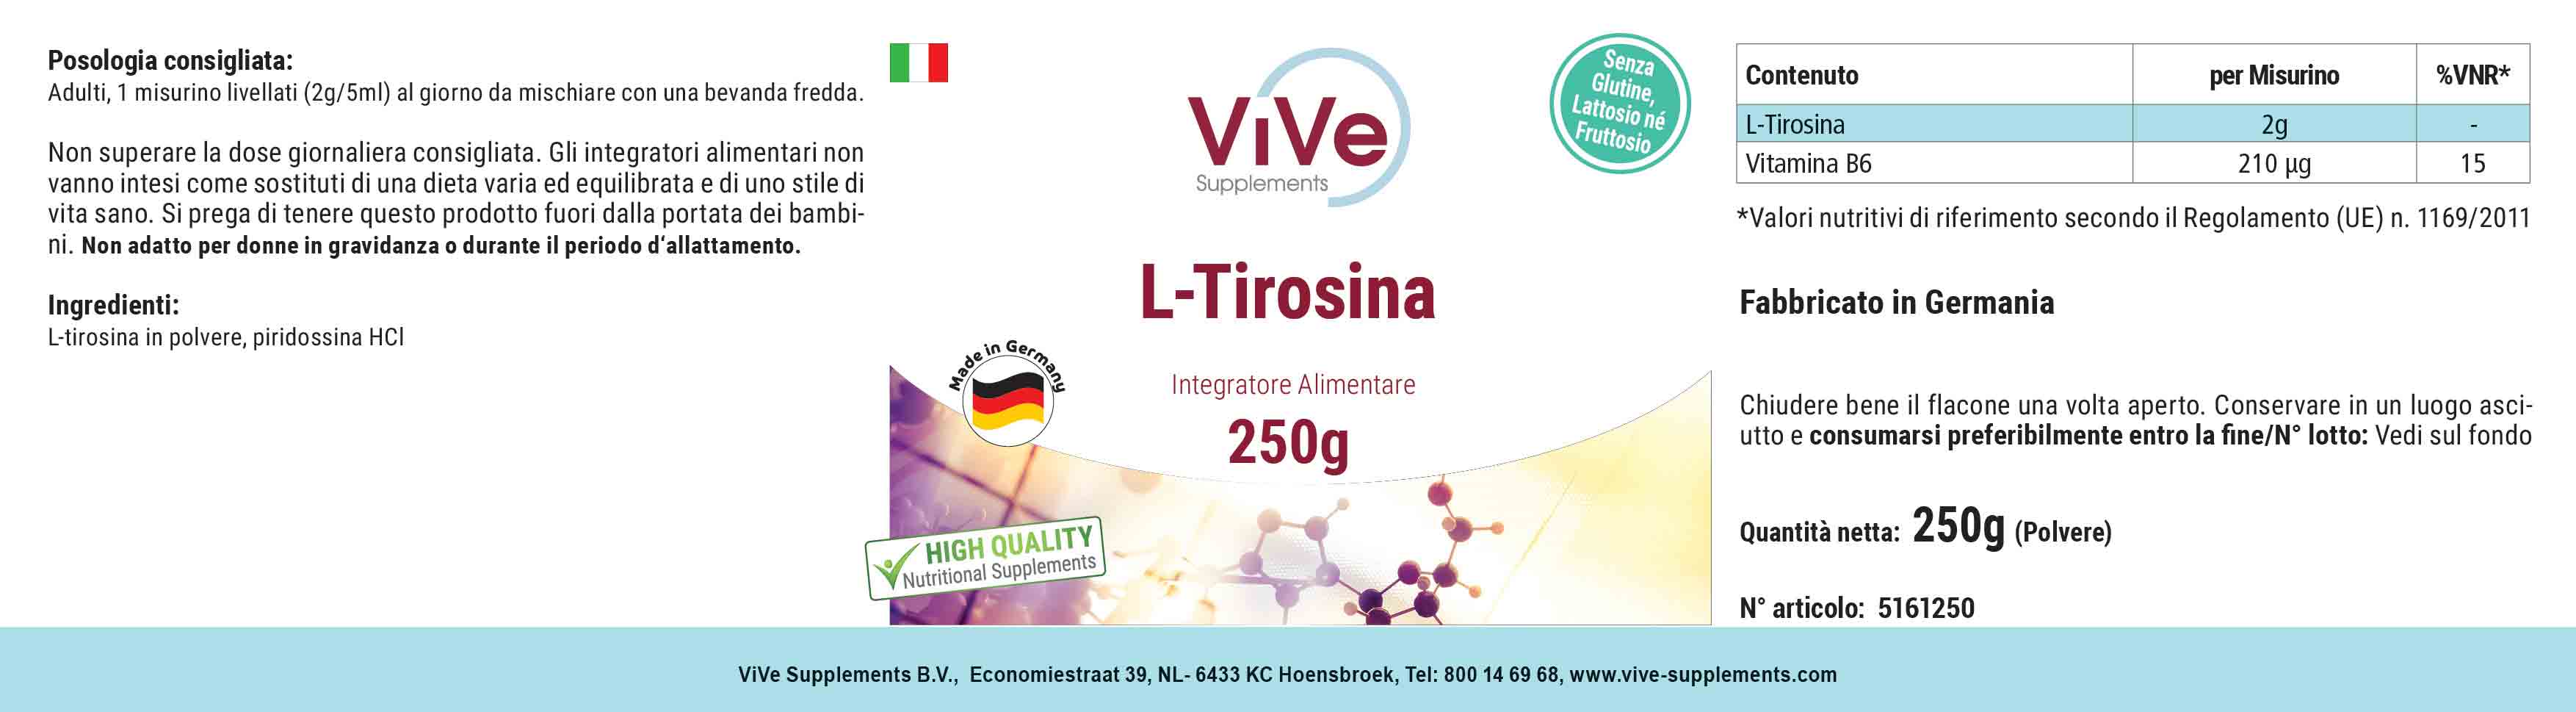 L-Tyrosin powder 250g + Vitamin B6